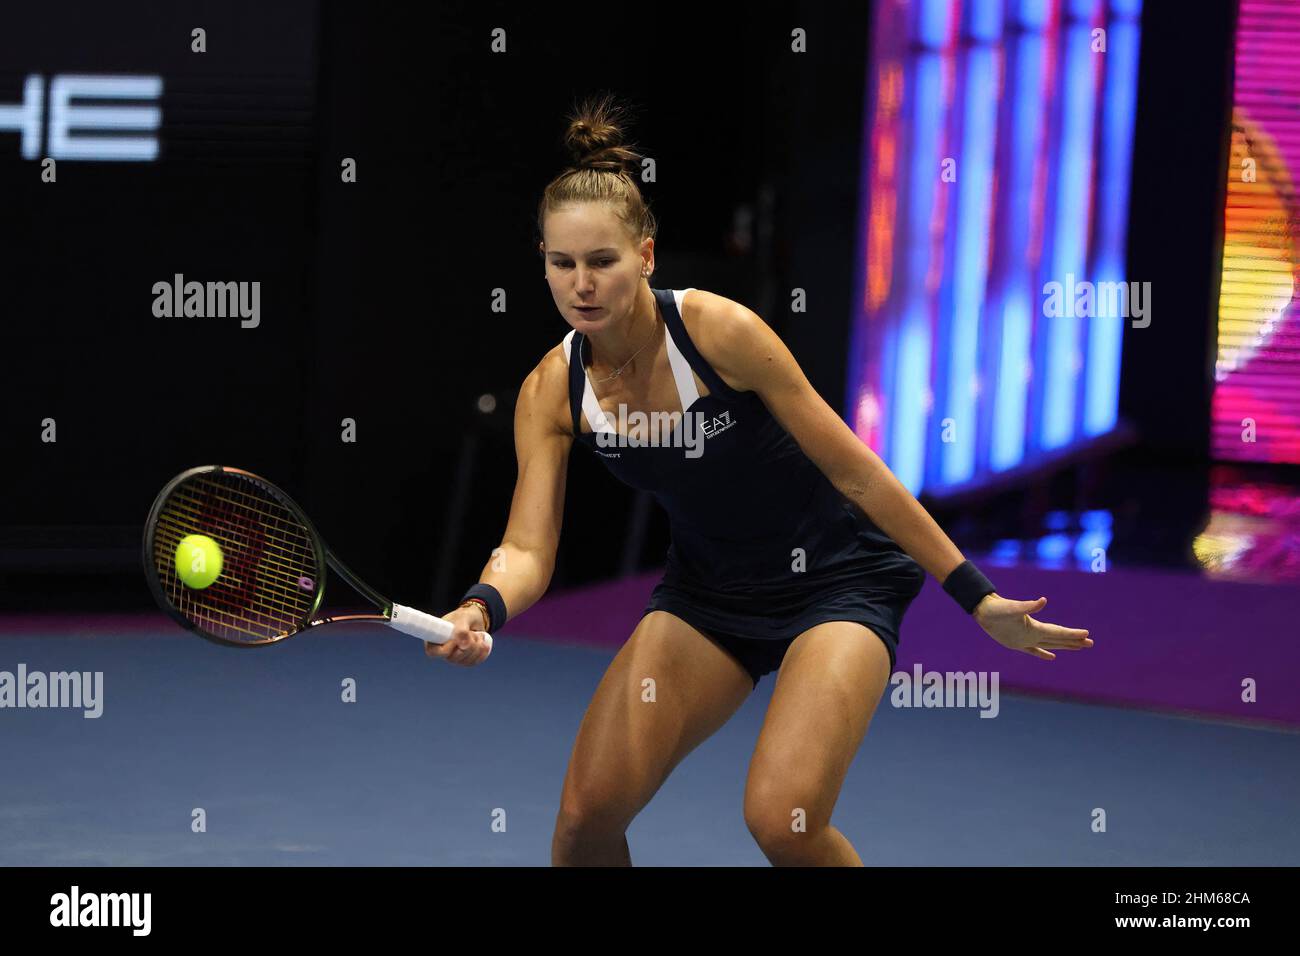 Veronika Kudermetova of Russia plays against Belinda Bencic of Switzerland during the St